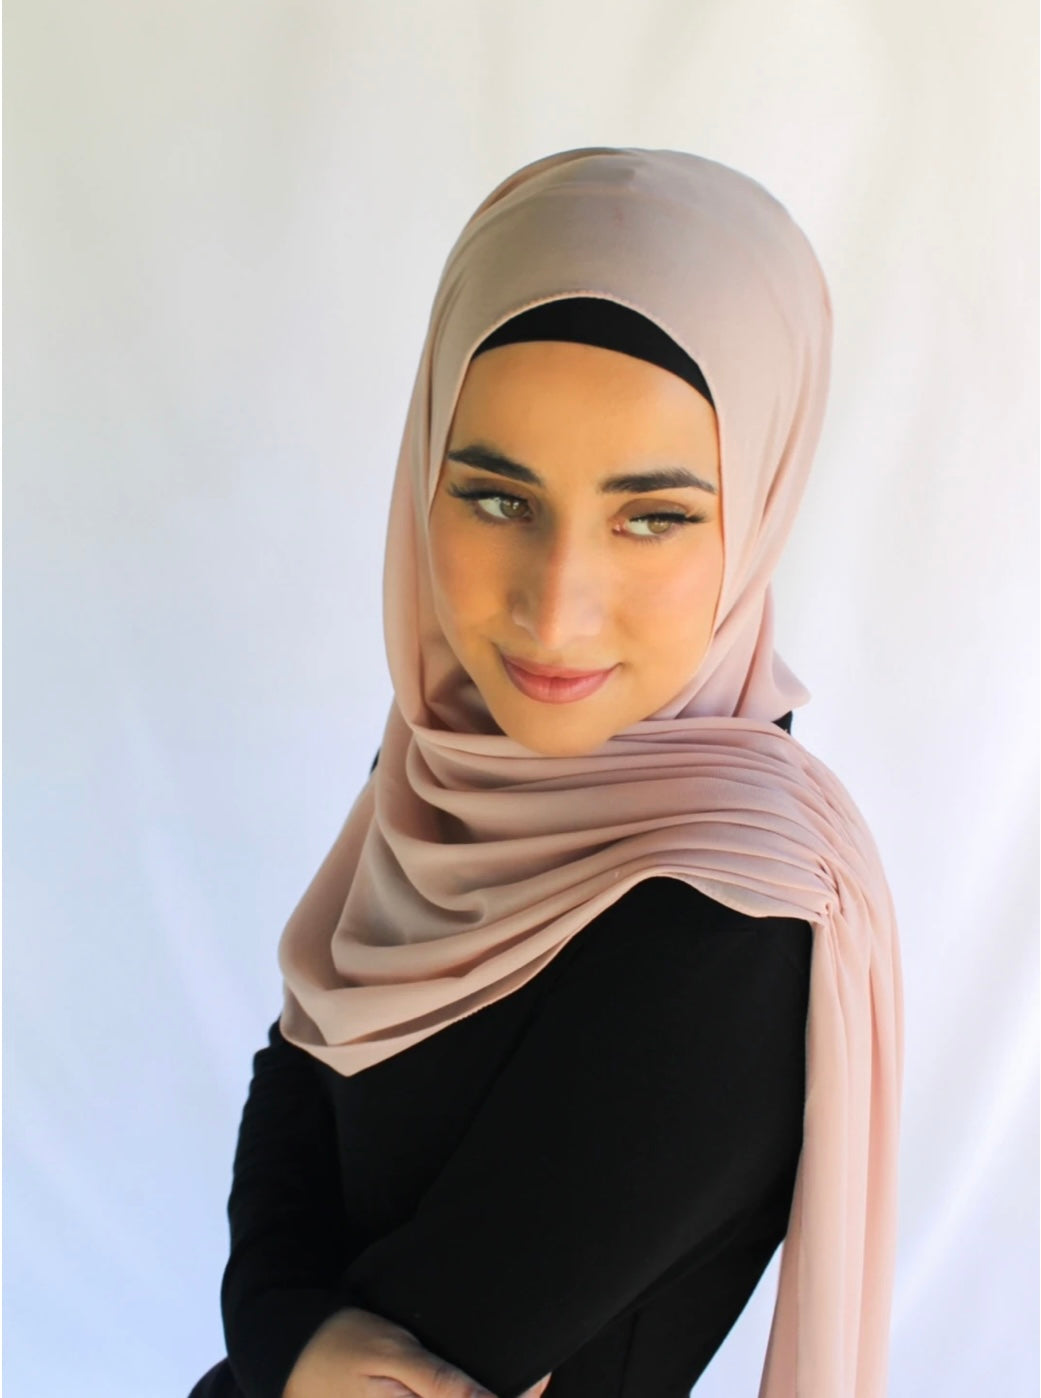 Pre-designed side stitch hijabs